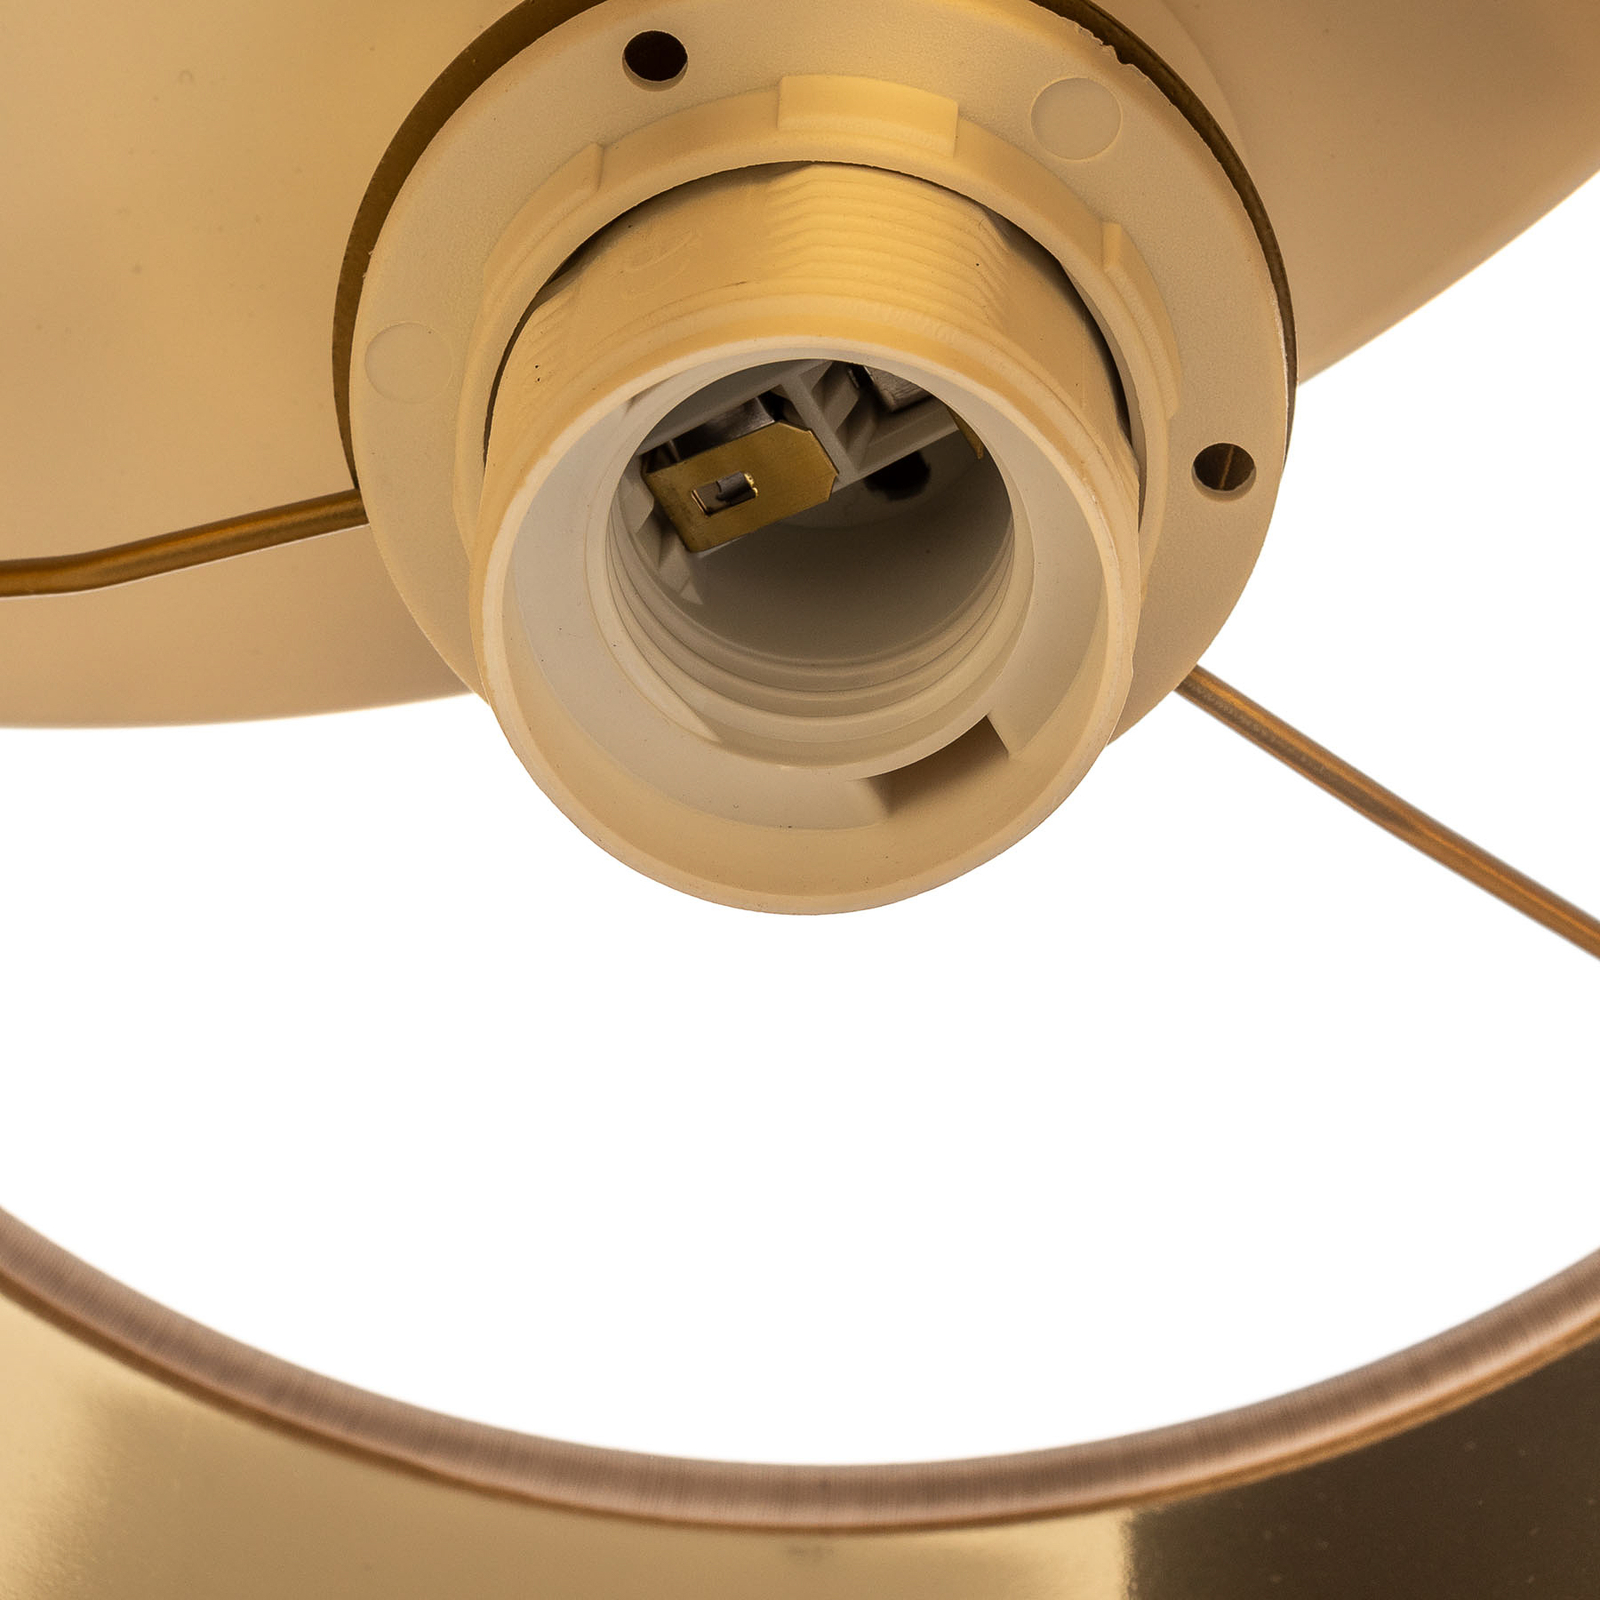 Plafonnier Soho cylindrique à 3 lampes blanc/doré